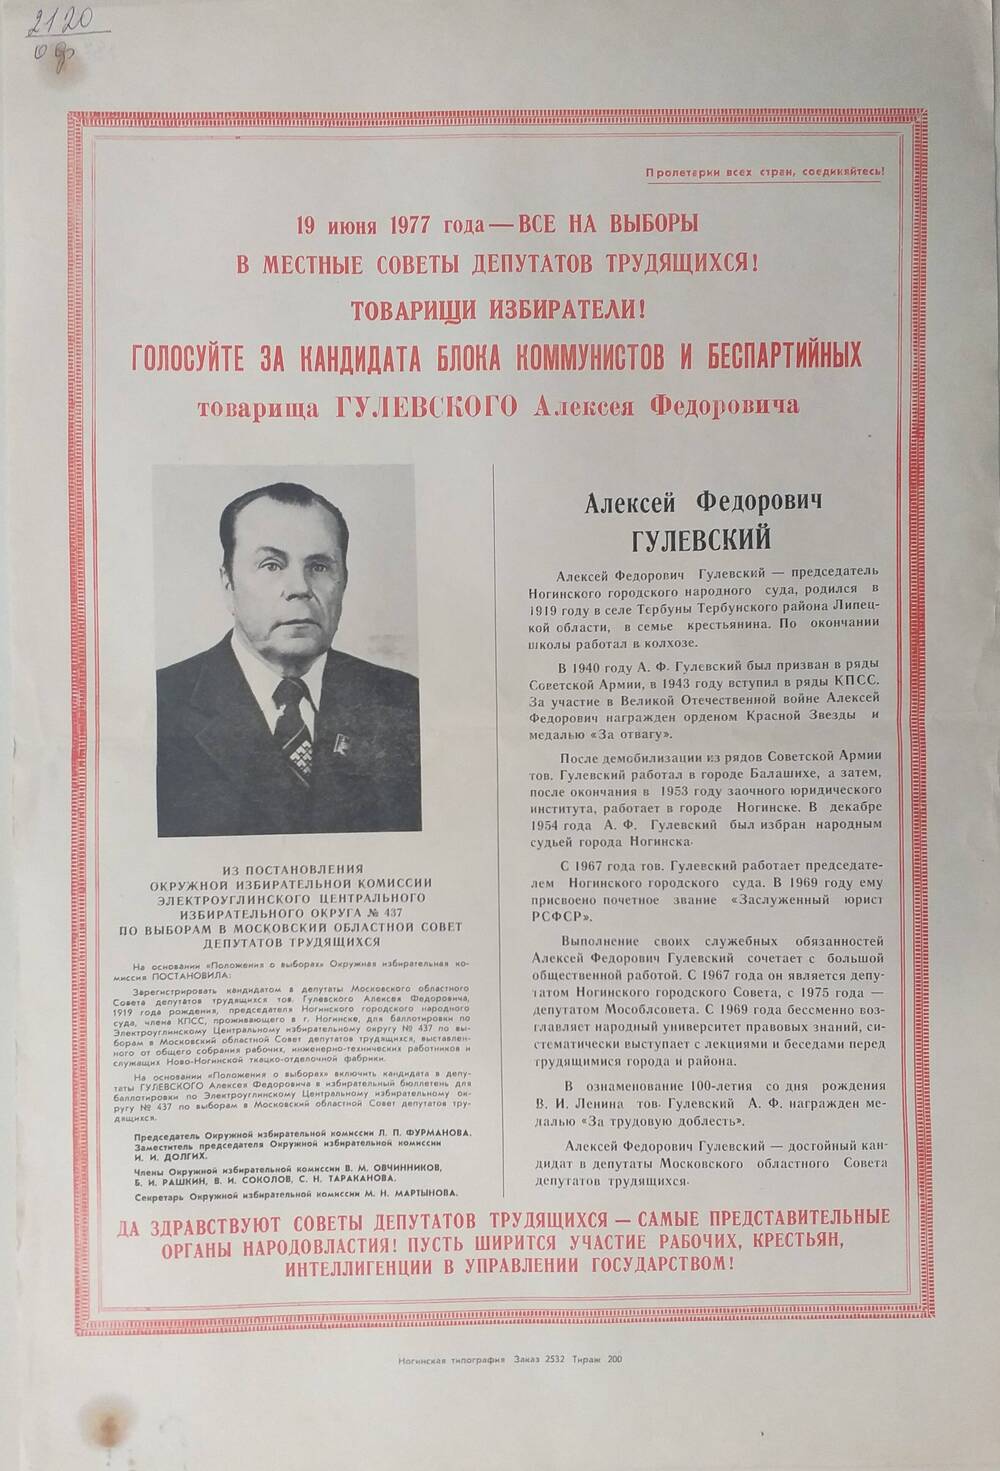 Плакат Призыв к голосованию на выборах 19 июня 1977 года за товарища Гулевского Алексея Фёдоровича - председателя Ногинского городского народного суда, 1977 год.